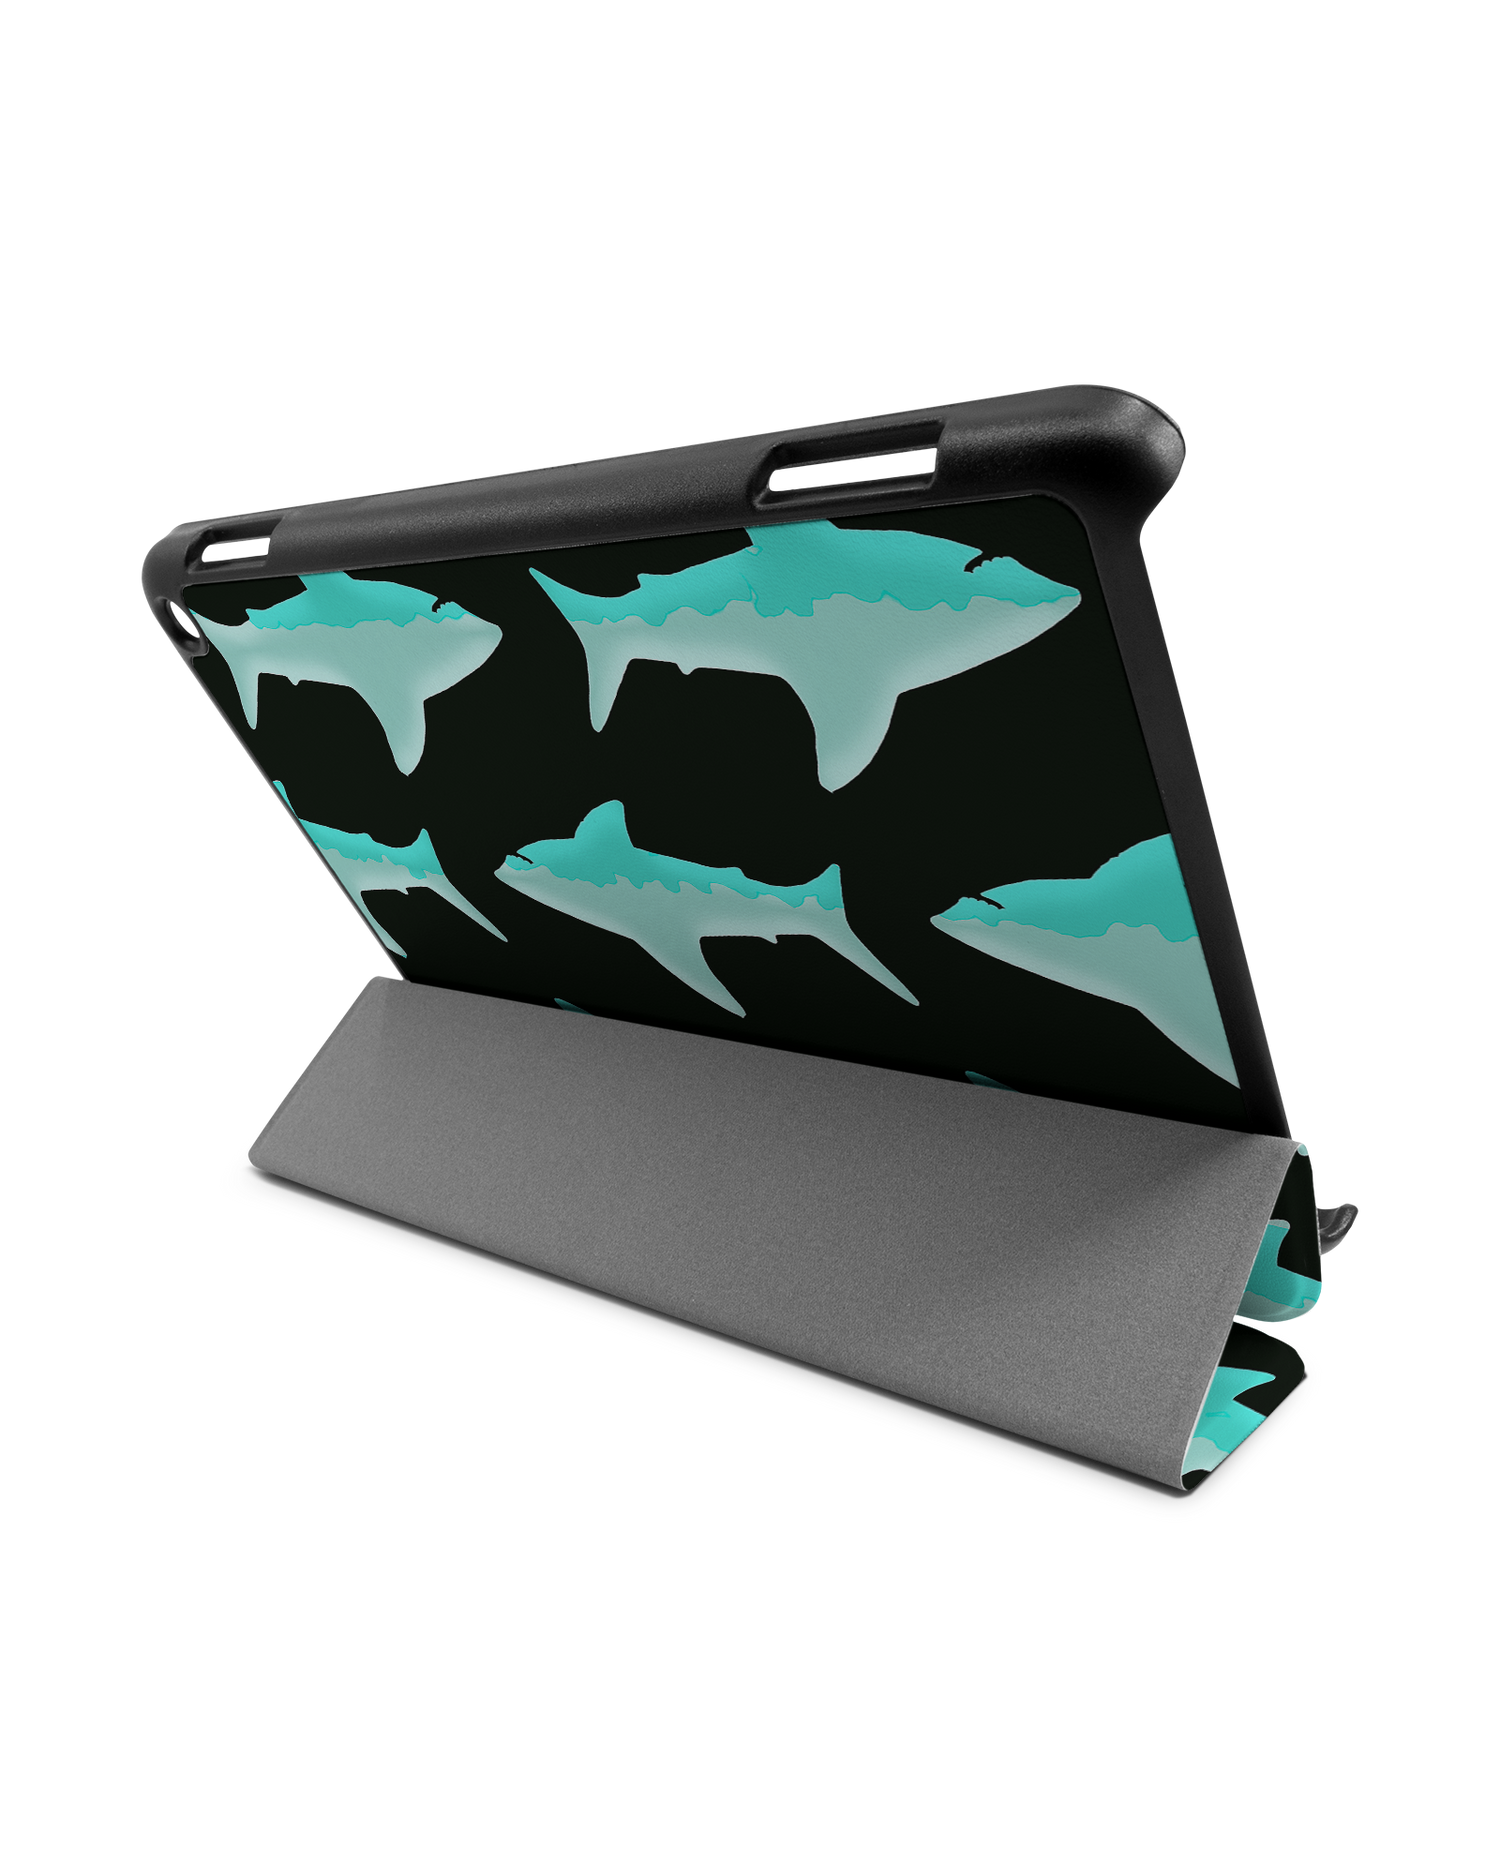 Neon Sharks Tablet Smart Case für Amazon Fire HD 8 (2022), Amazon Fire HD 8 Plus (2022), Amazon Fire HD 8 (2020), Amazon Fire HD 8 Plus (2020): Aufgestellt im Querformat